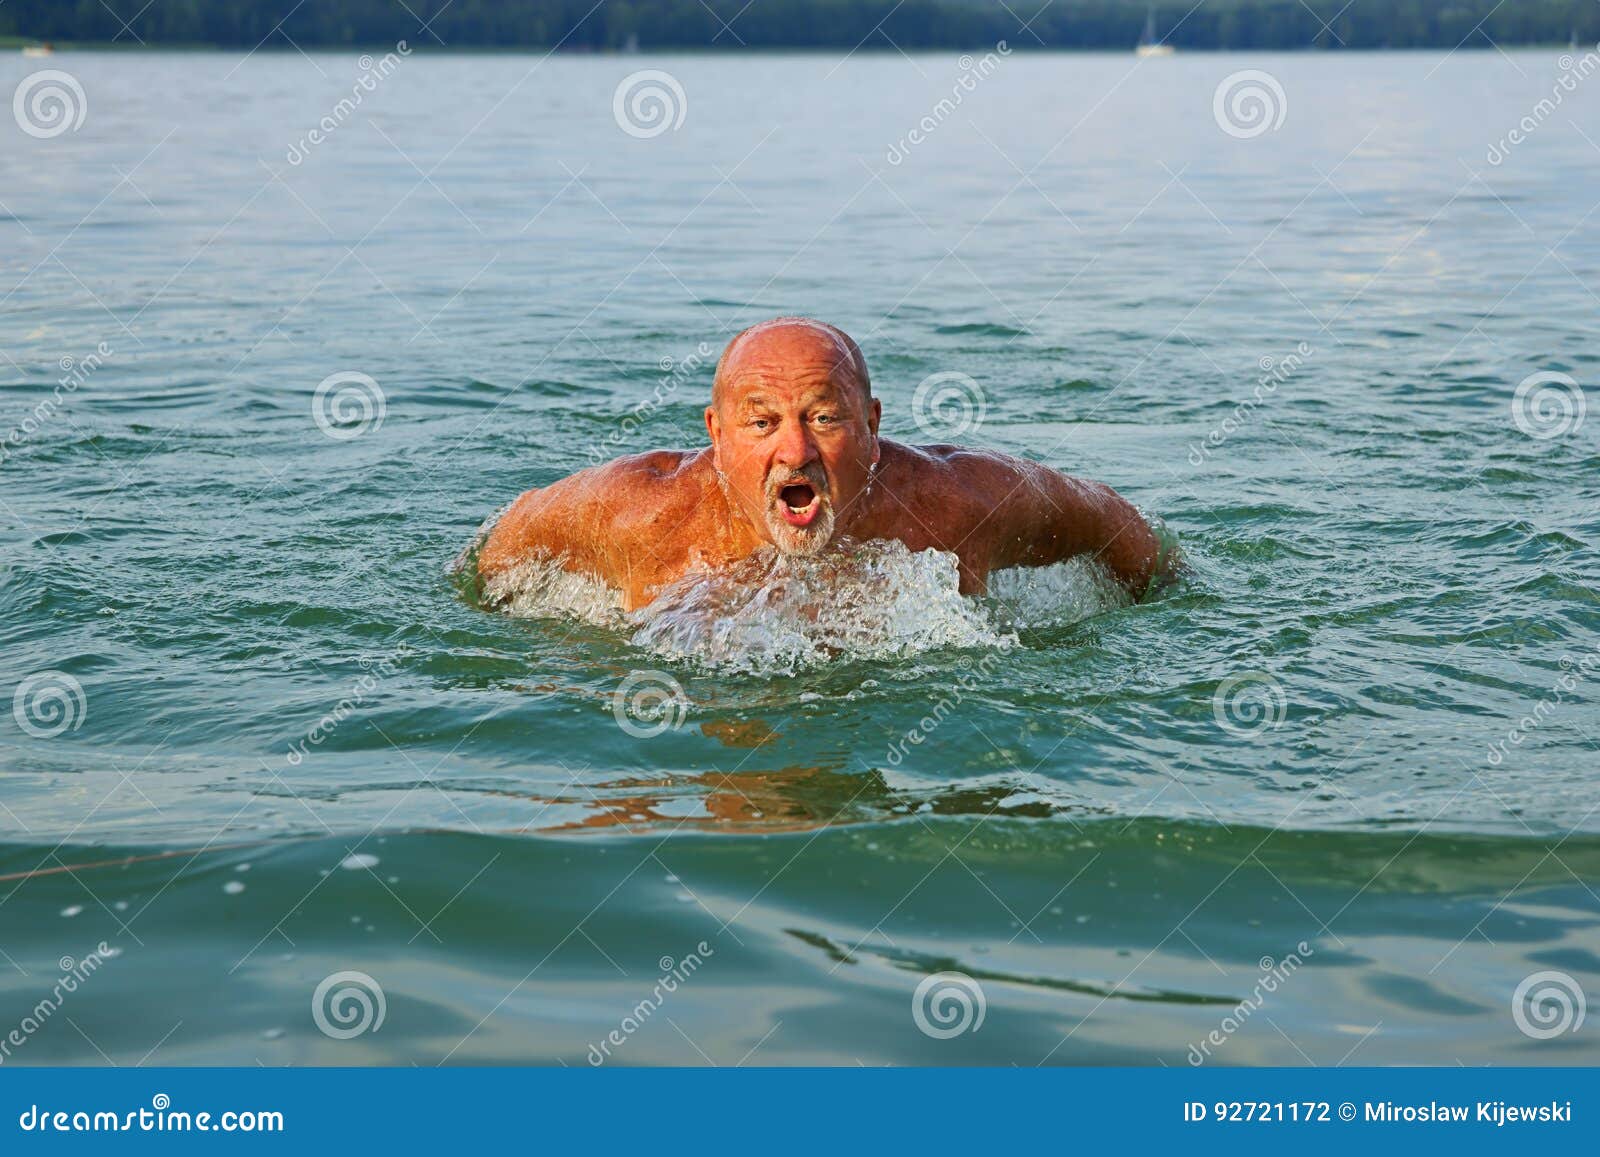 南湖晨泳會: 老人游泳比賽